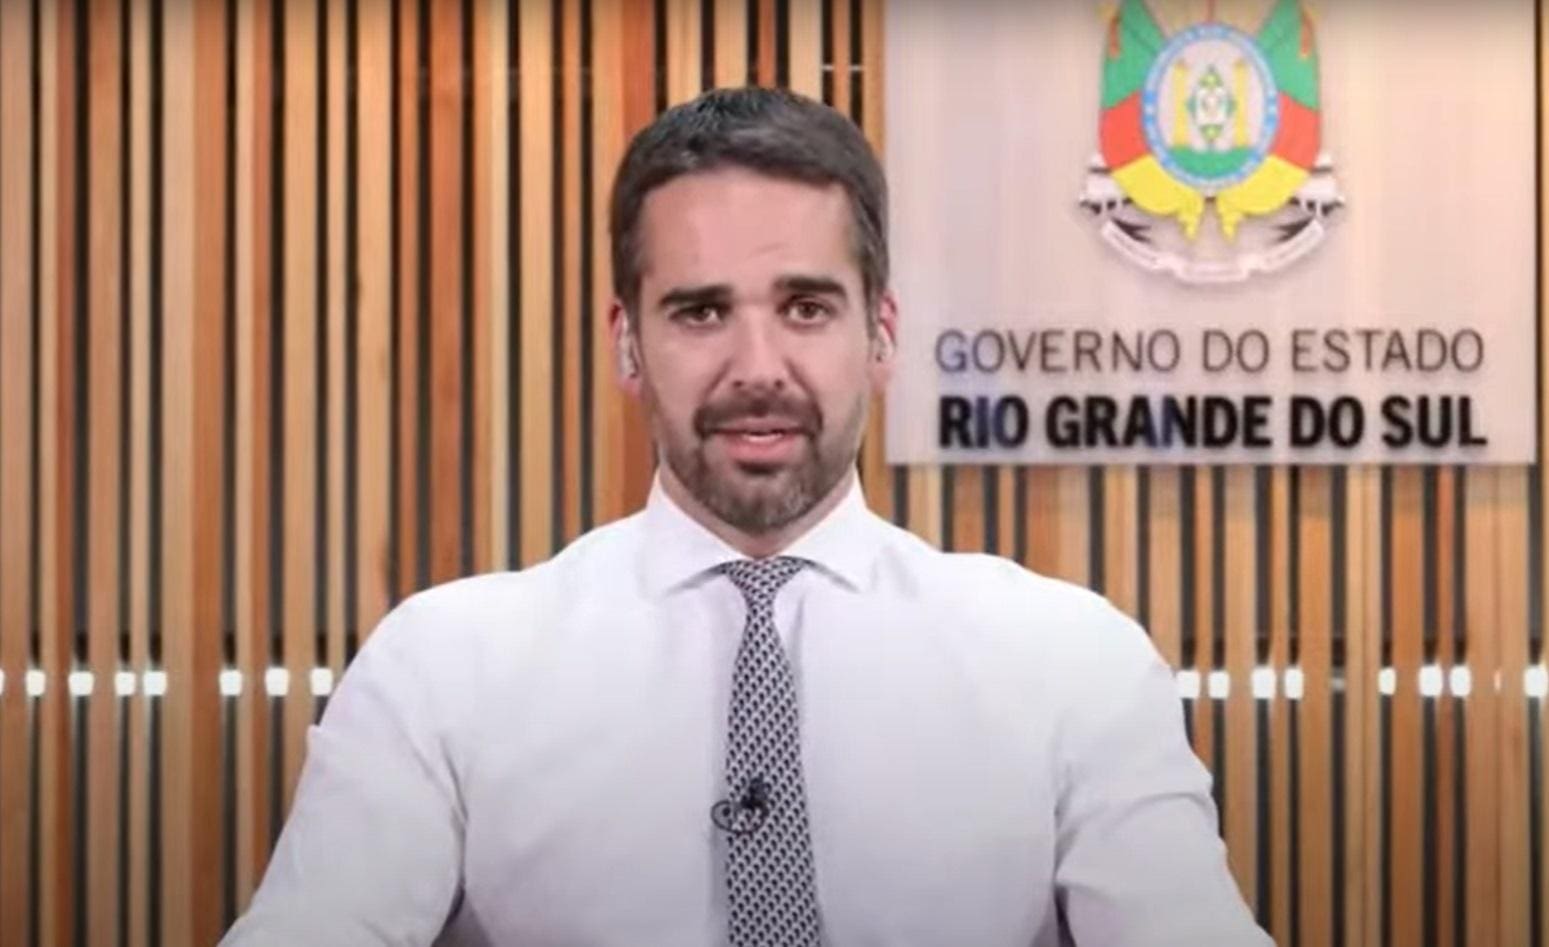 Governador do Rio Grande do Sul, Eduardo Leite (PSDB) assumiu ser gay em 2021